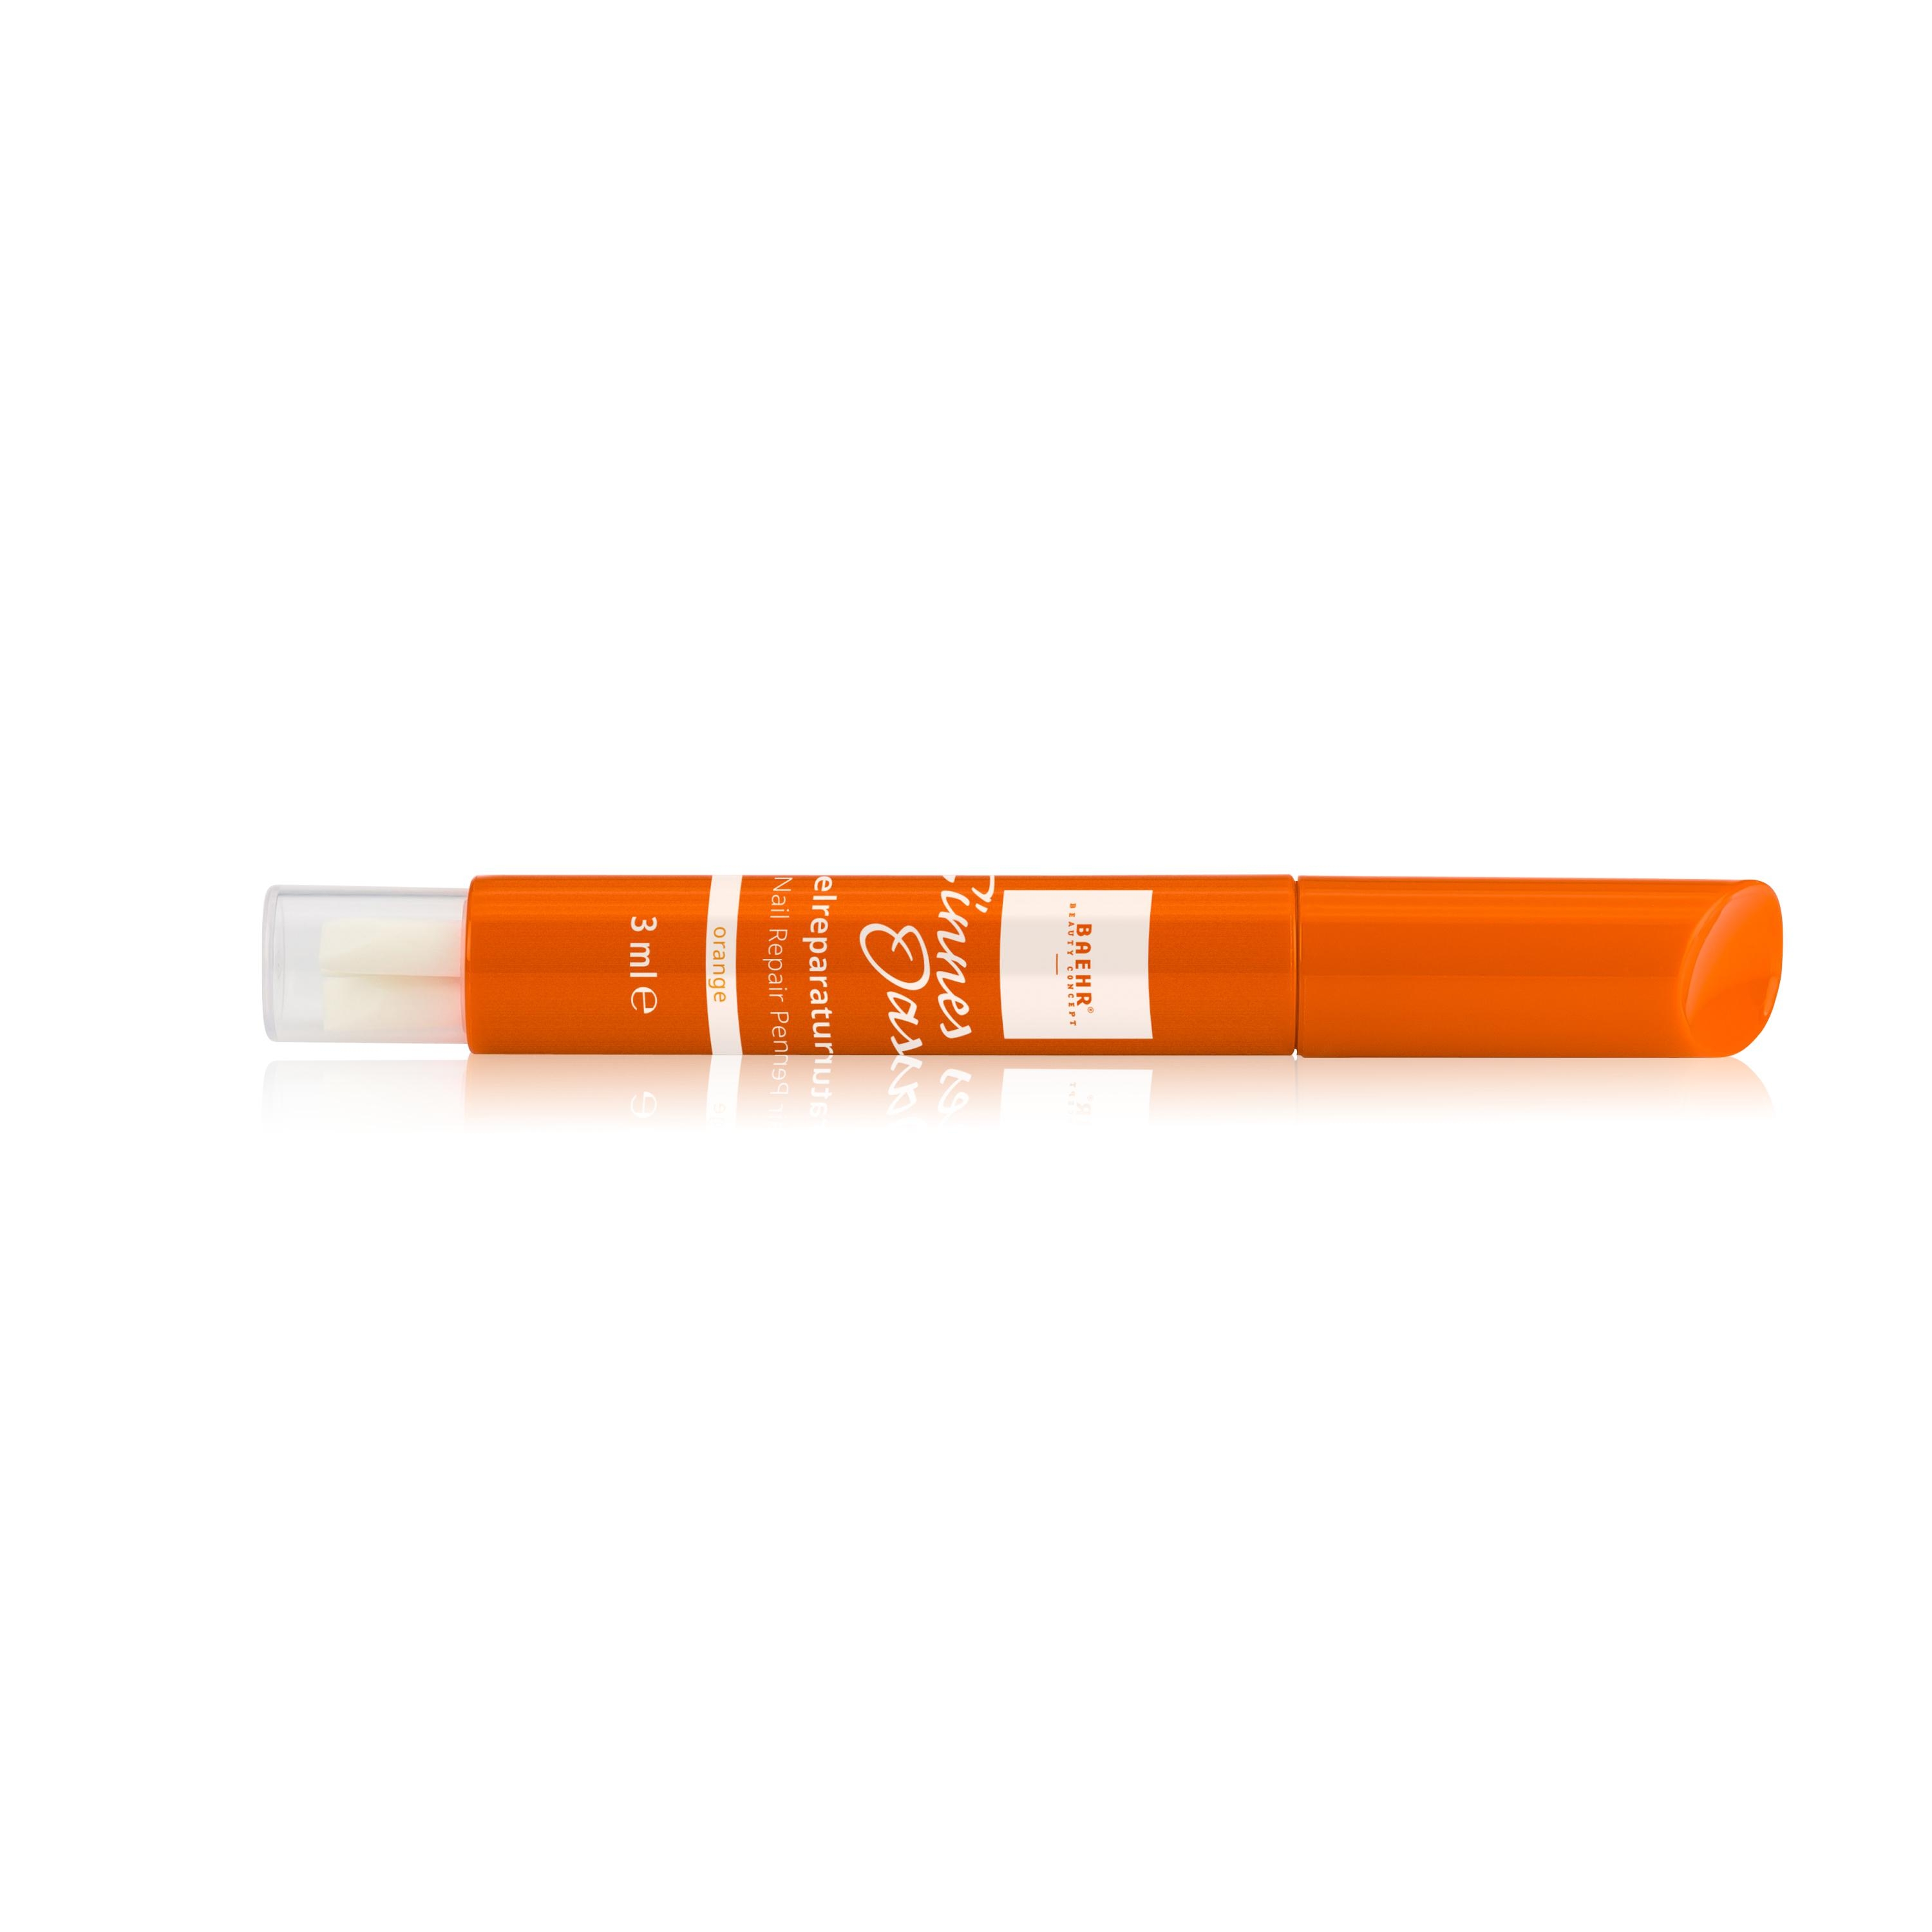 BAEHR BEAUTY CONCEPT Sinnes Oase Nail Repair Pen orange, 3 Ersatzspitzen 3 ml